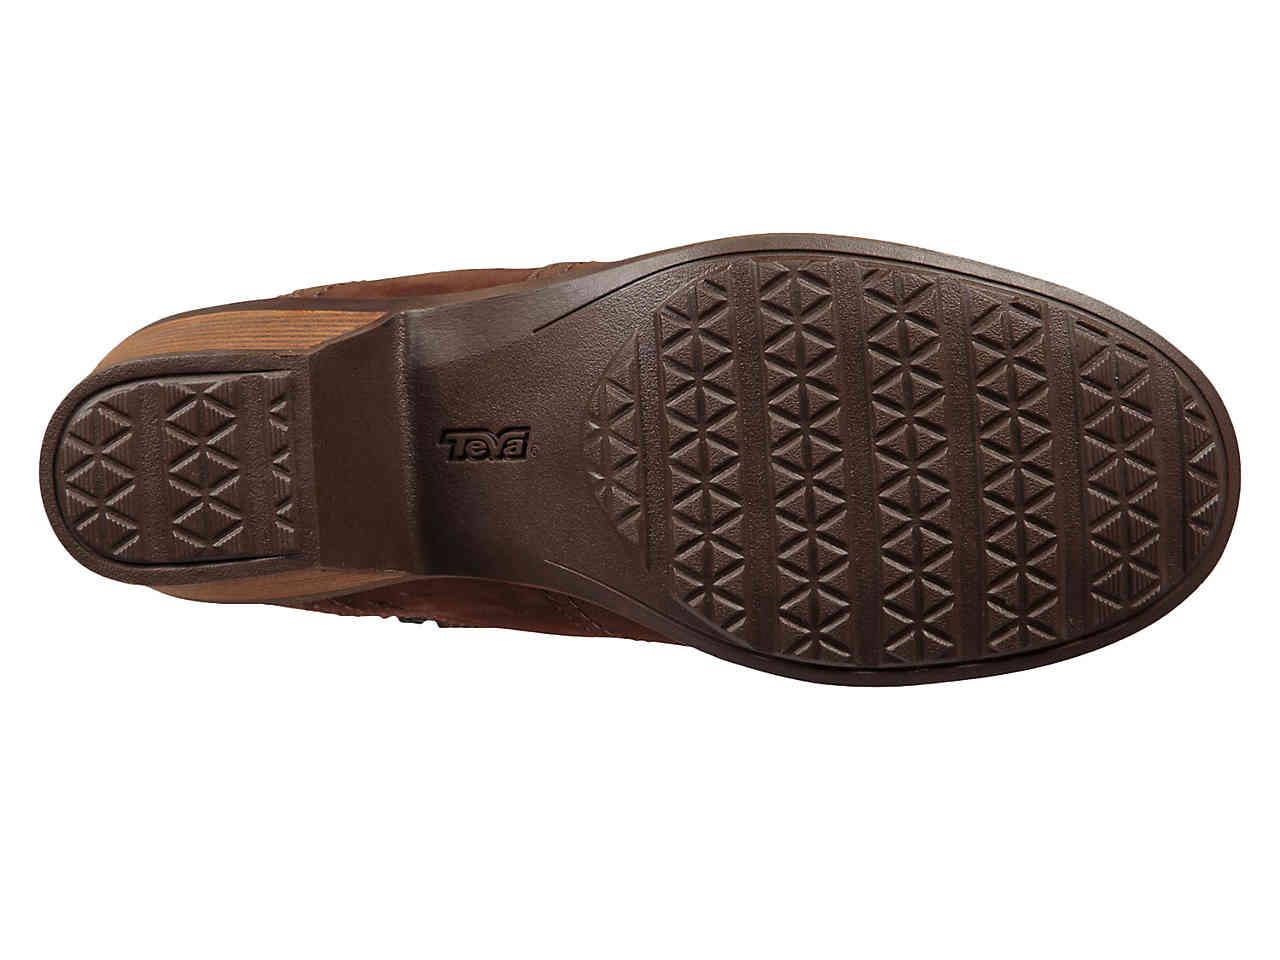 Teva Leather Anaya Boot in Dark Brown (Brown) - Lyst